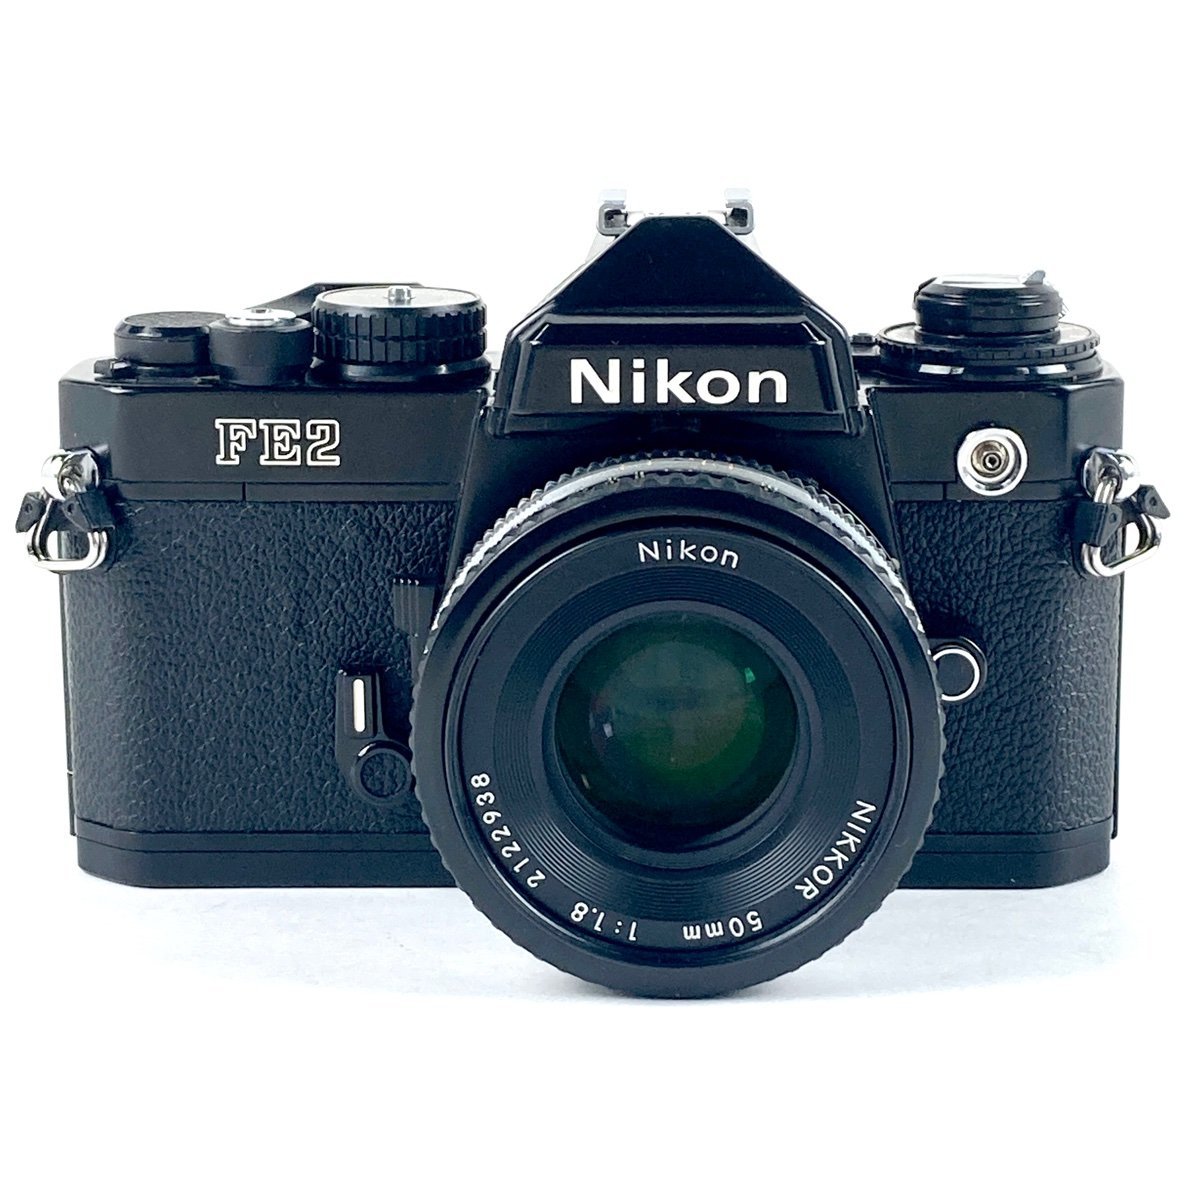 ニコン Nikon FE2 + Ai-S NIKKOR 50mm F1.8 パンケーキ ［ジャンク品］ フィルム マニュアルフォーカス 一眼レフカメラ 【中古】